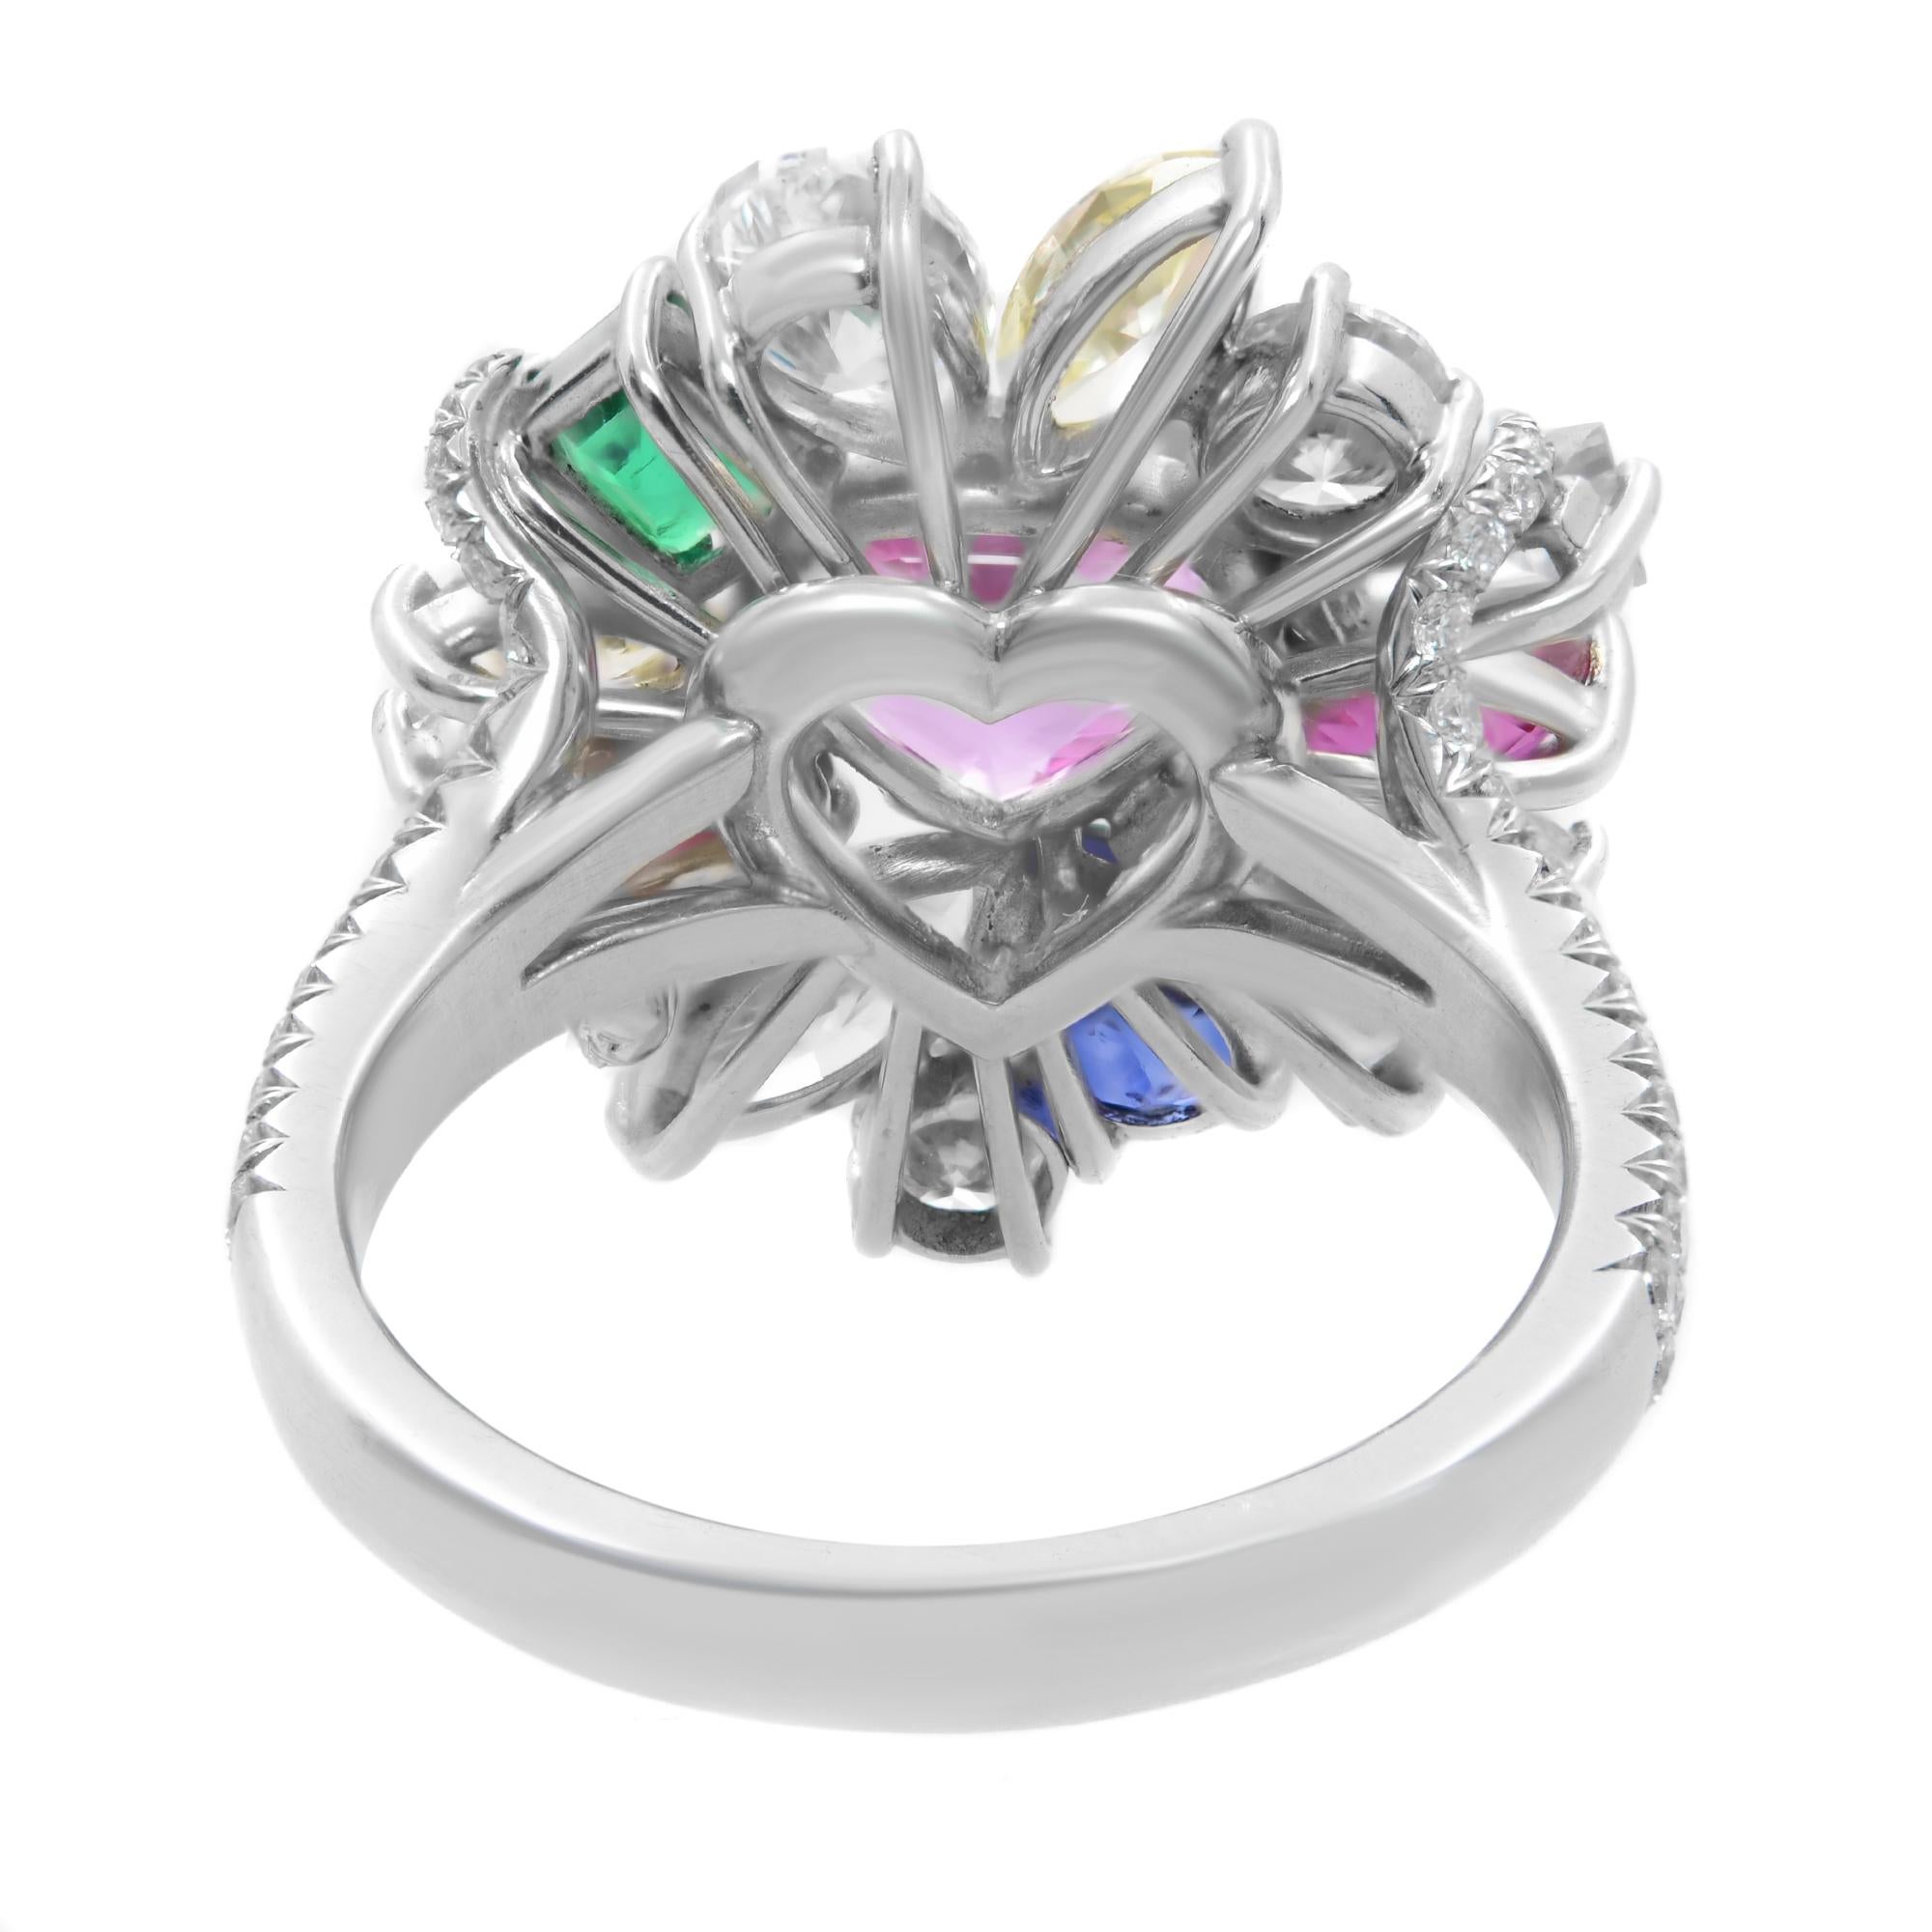 Heart Cut Multi-Colored Gemstones & Diamonds Cocktail Ring Platinum 5.37cttw